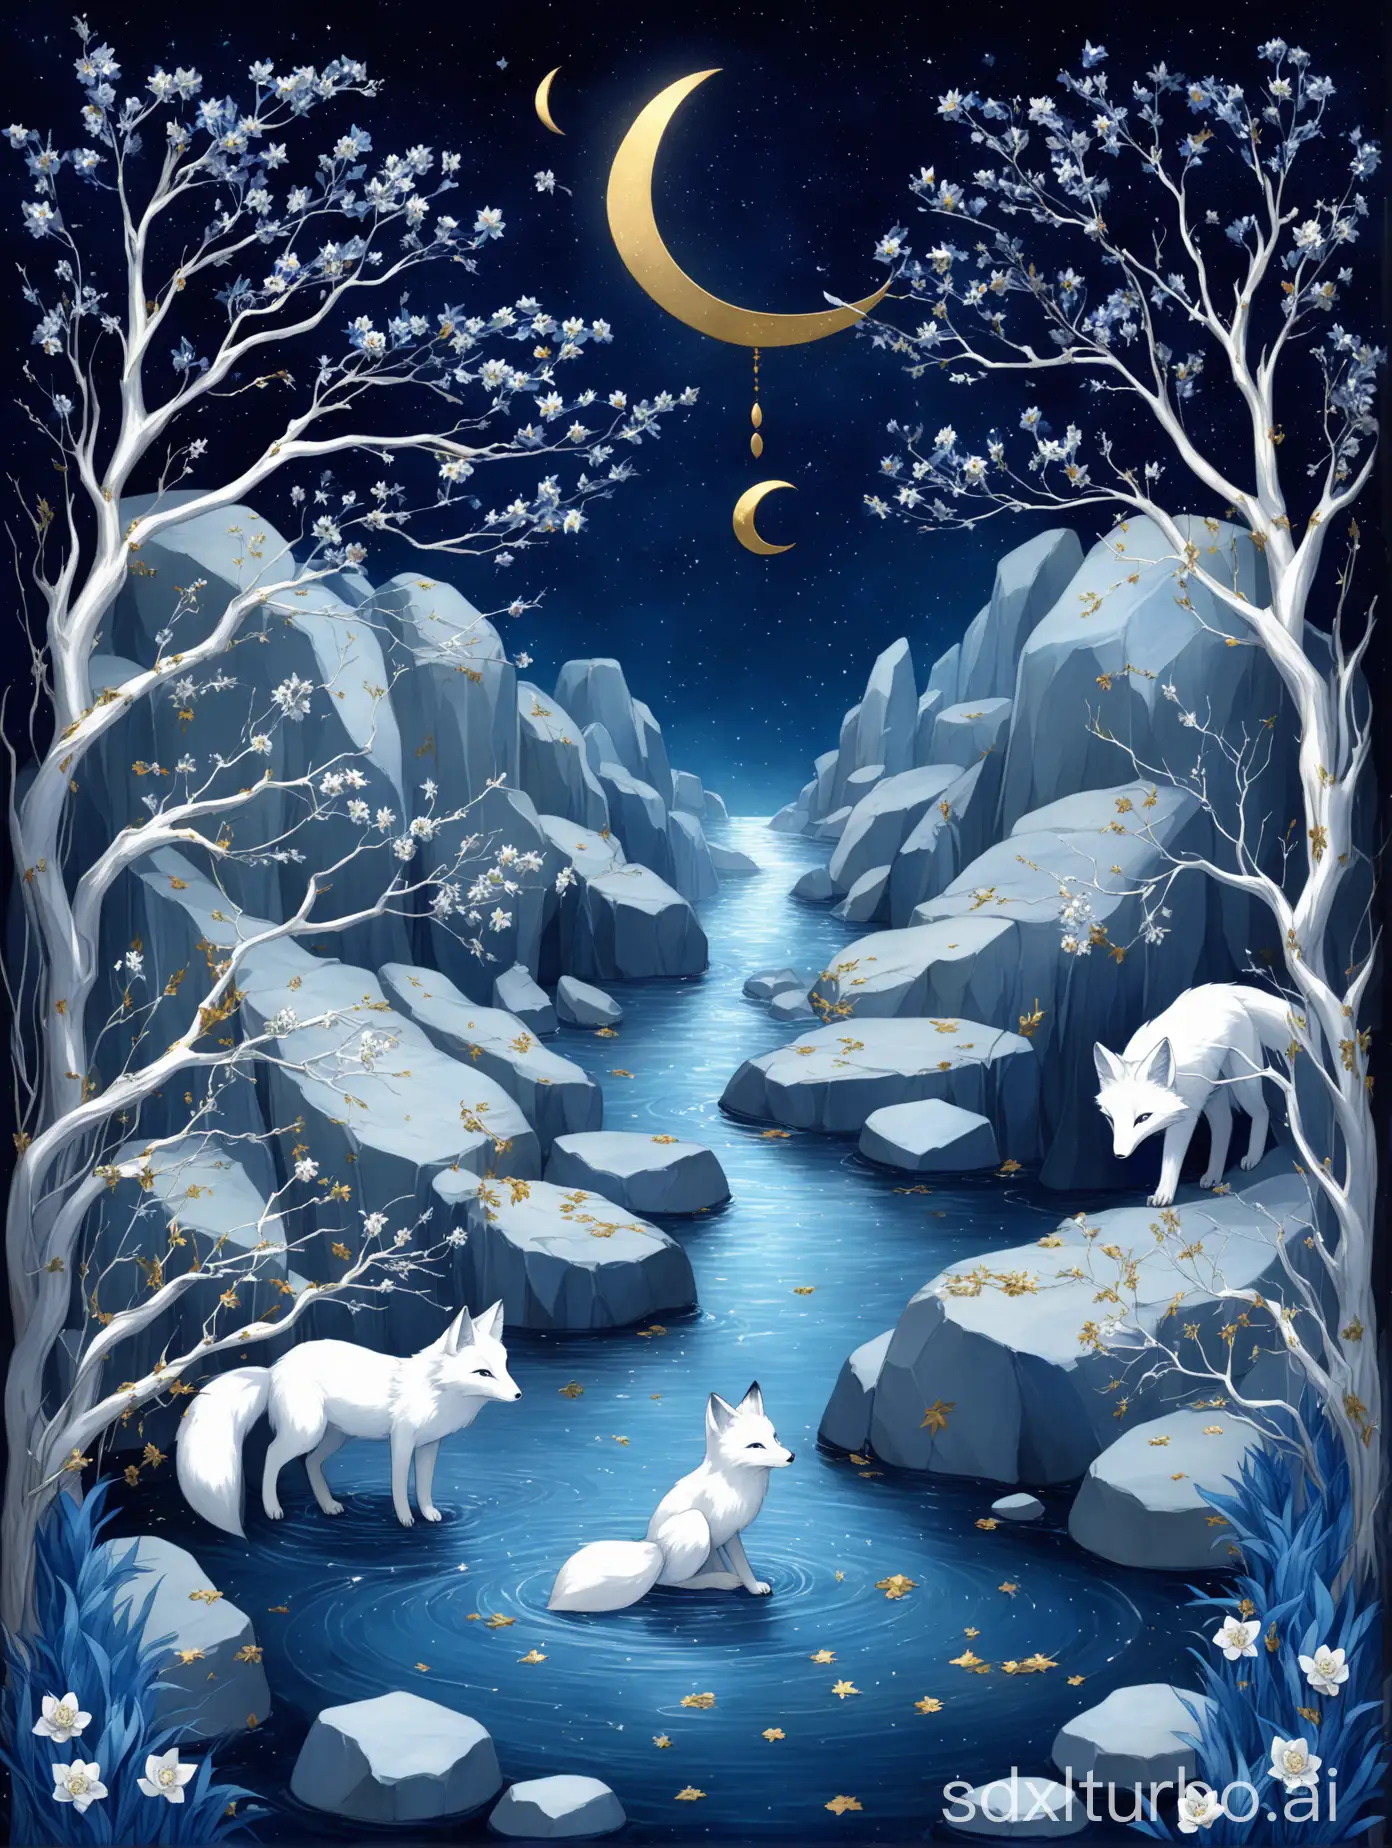 画面背景深蓝色的星空 
有一个金色的小的弯月
背景两侧是长枝条的蓝色树叶的数,树上零散开着银色的小花
画面中间是流水,水下有隐约的石头
画面的右下角有一只长尾的银白色狐狸动物